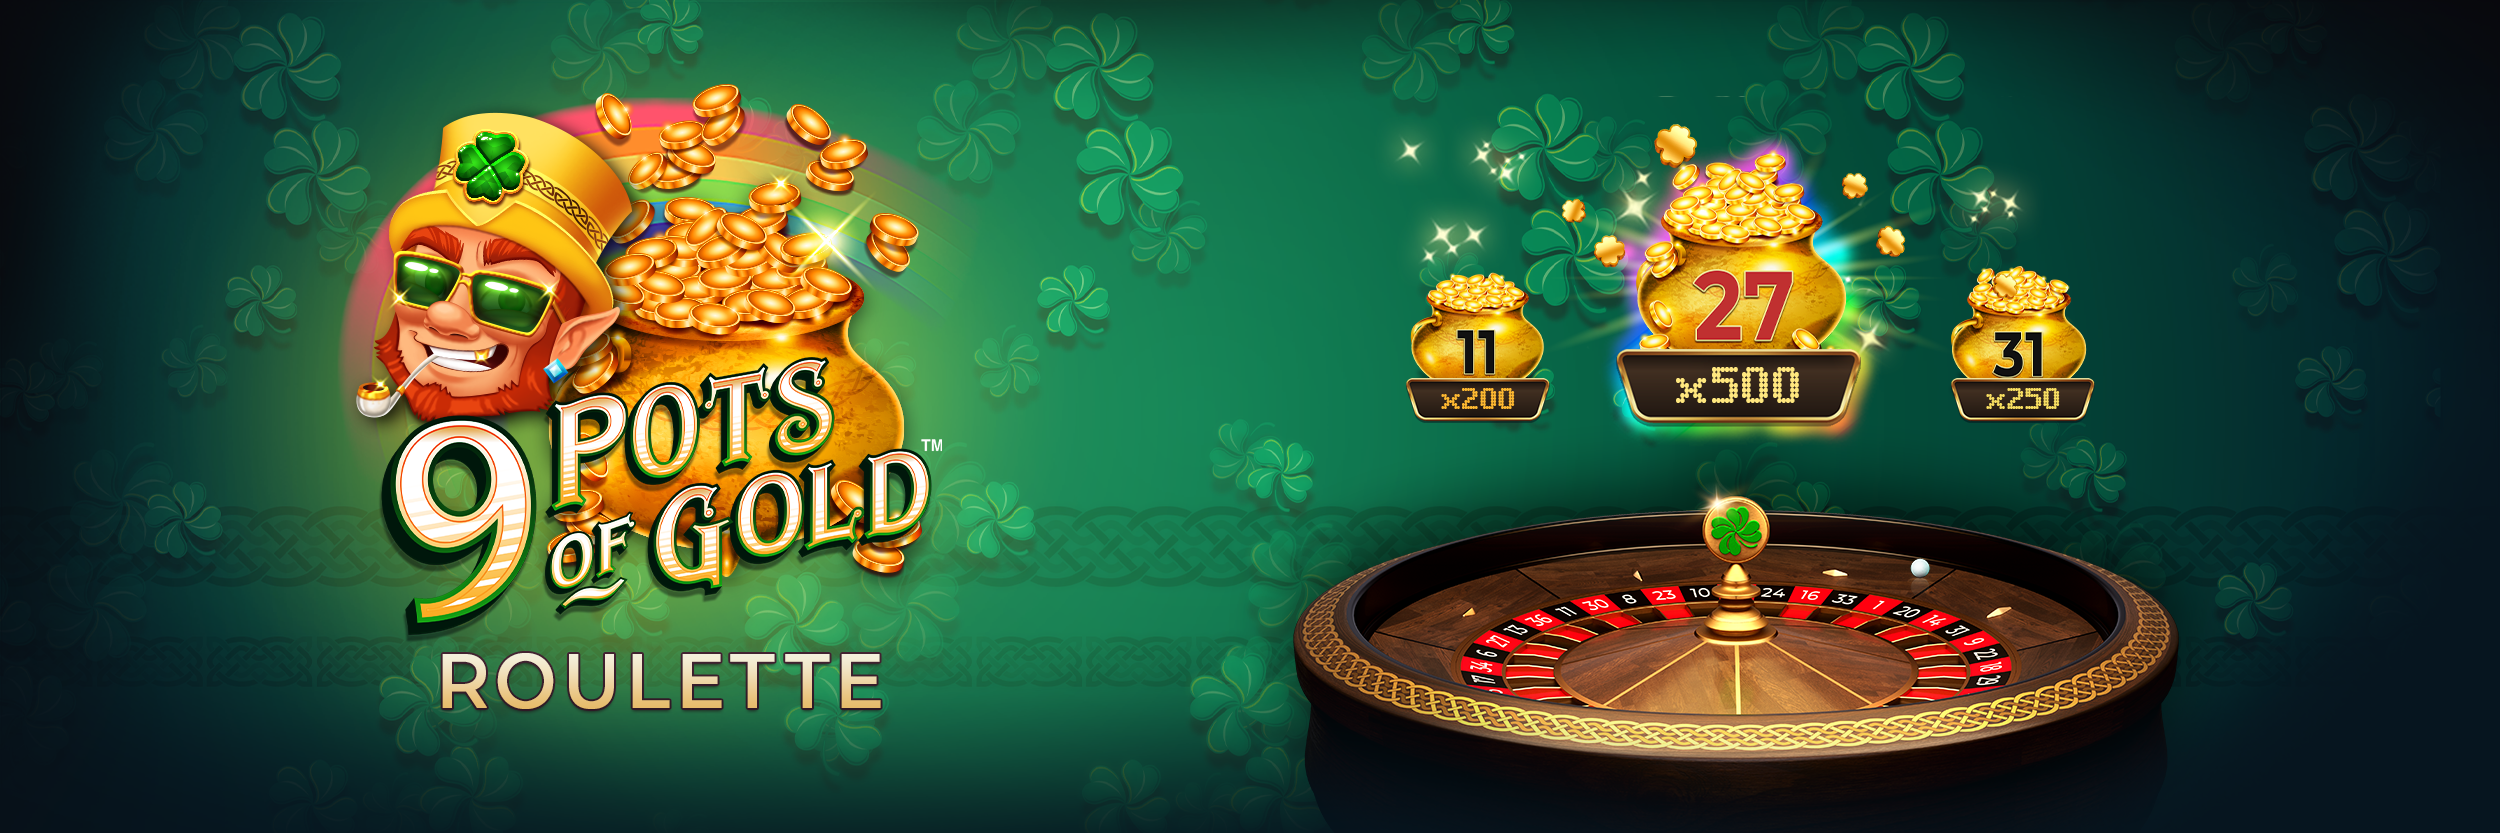 9 pots of gold roulette logo